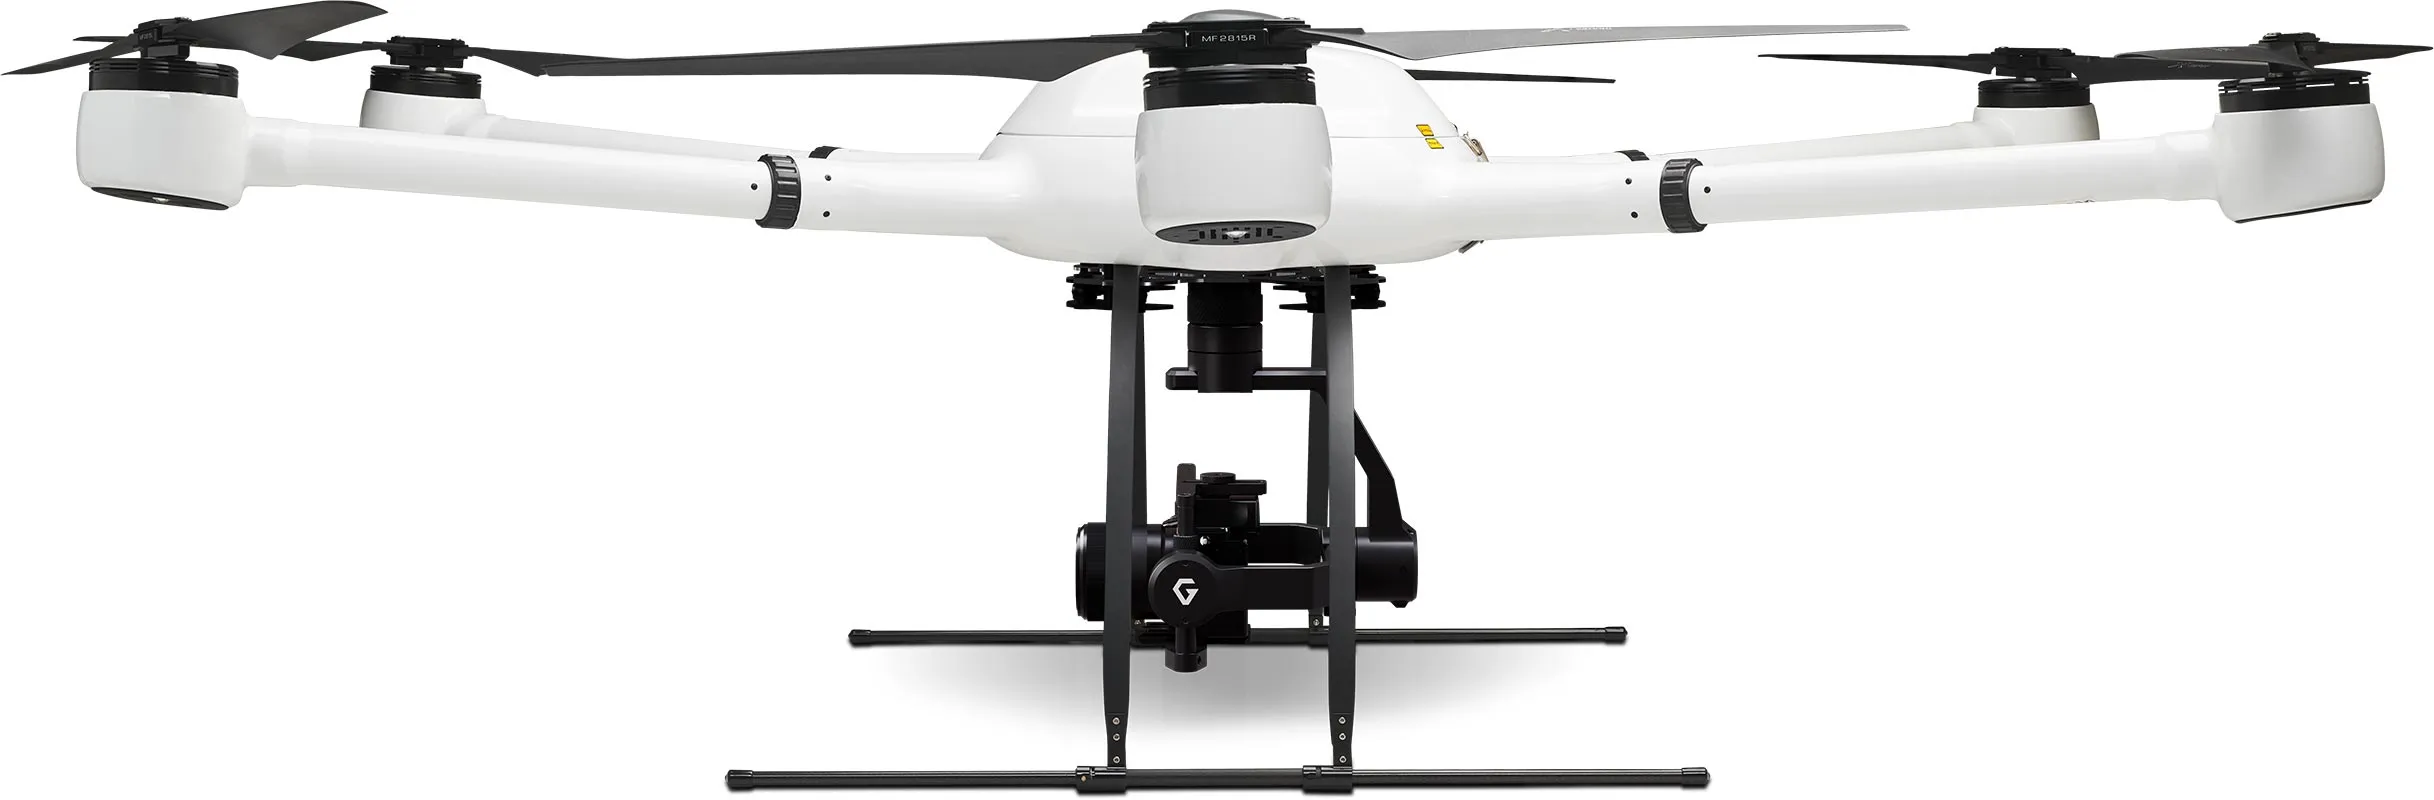 Exabotix Atlas Mapper Drone industriel Vue latérale de gauche avec caméra et gimbal pour les tâches de topographie et de photogrammétrie.